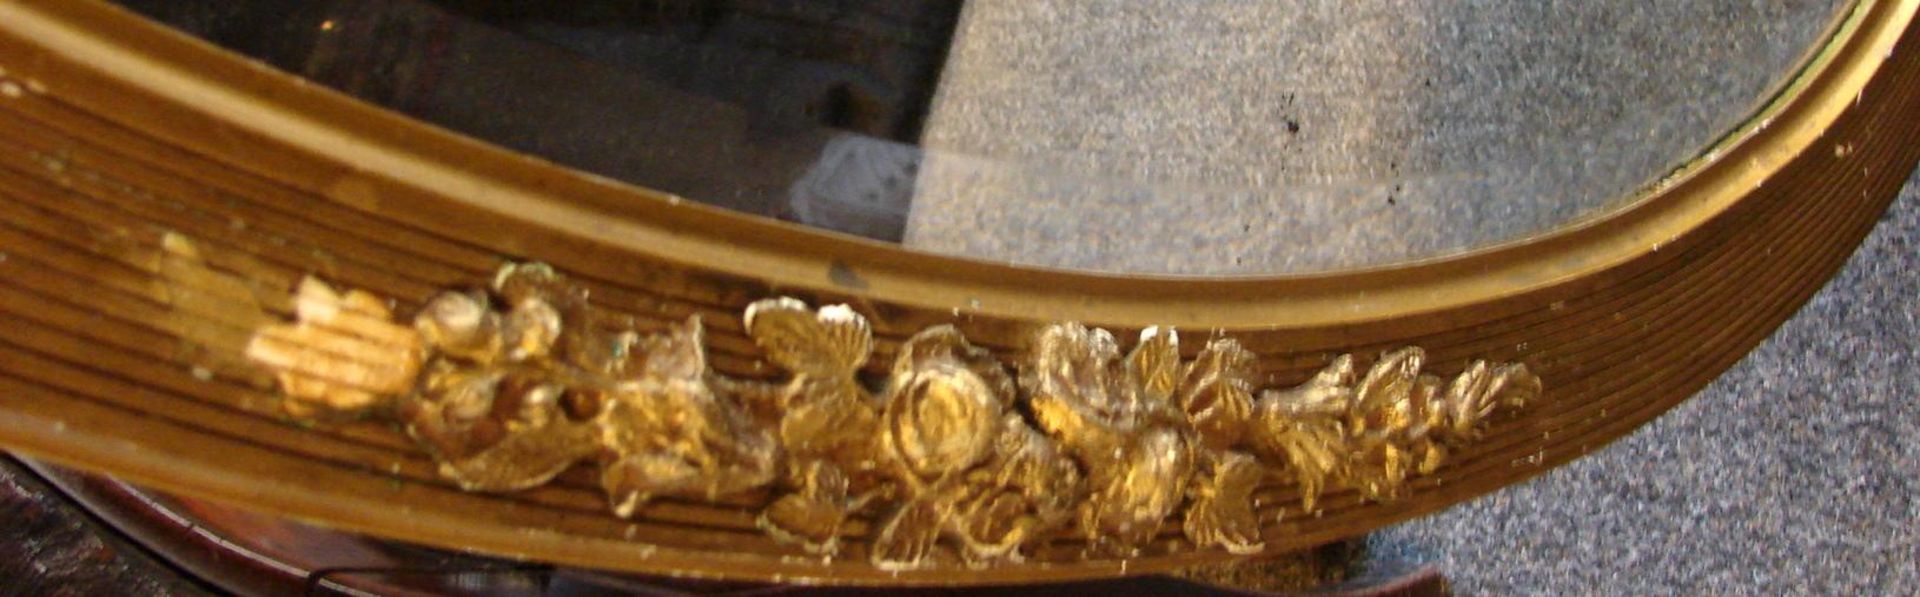 Spiegel, oval, mit Rosenornamenten, Facettenschliff, ca. 84 x 56 cm - Image 3 of 3